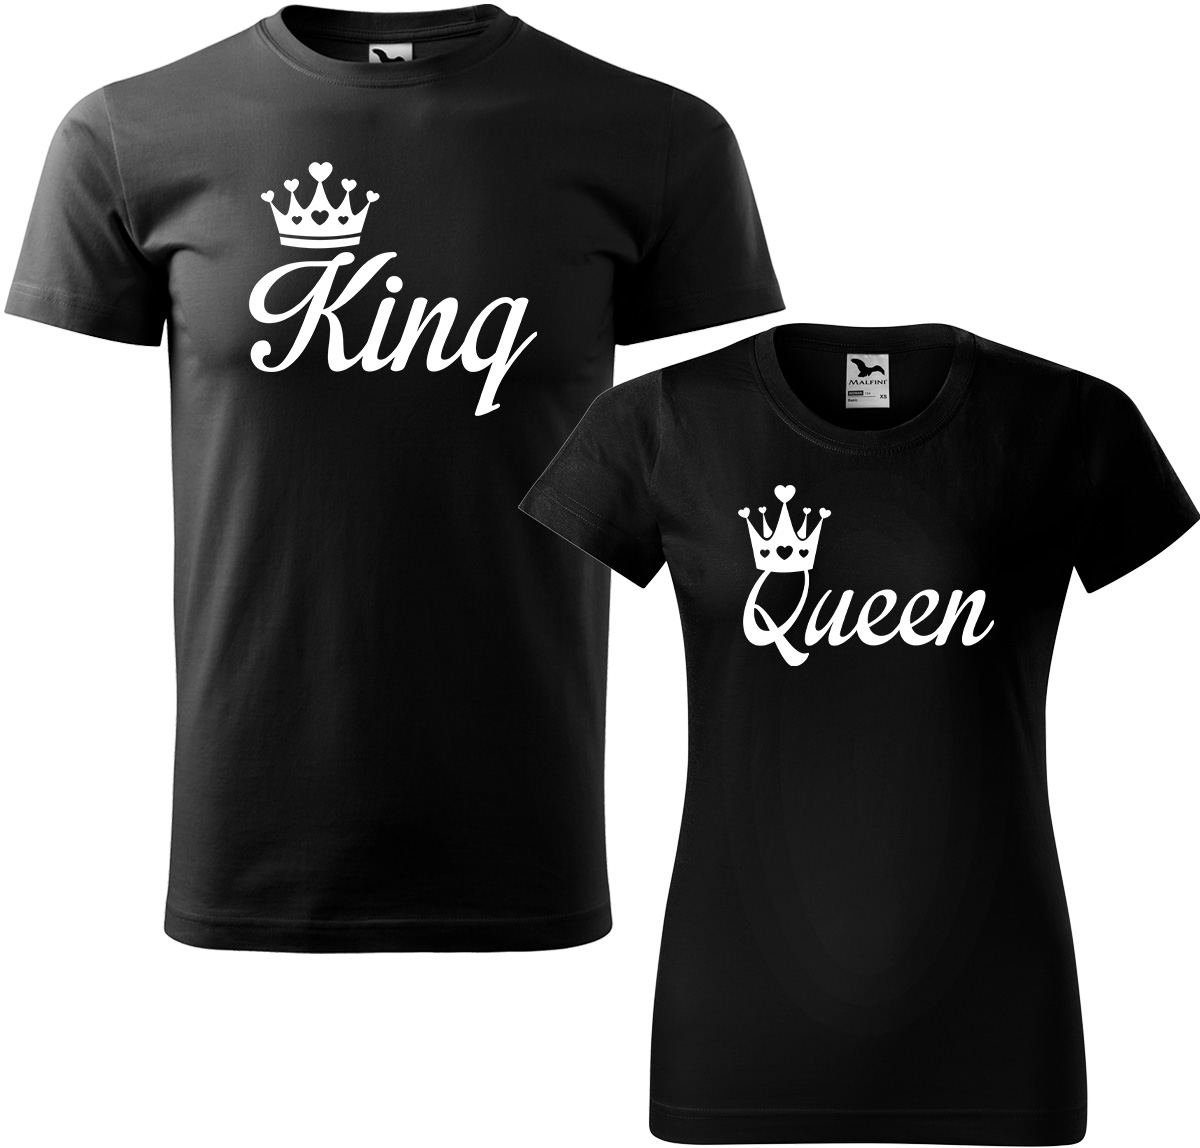 Trička pro páry - King a queen Barva: Černá (01), Velikost dámské tričko: 3XL, Velikost pánské tričko: 3XL